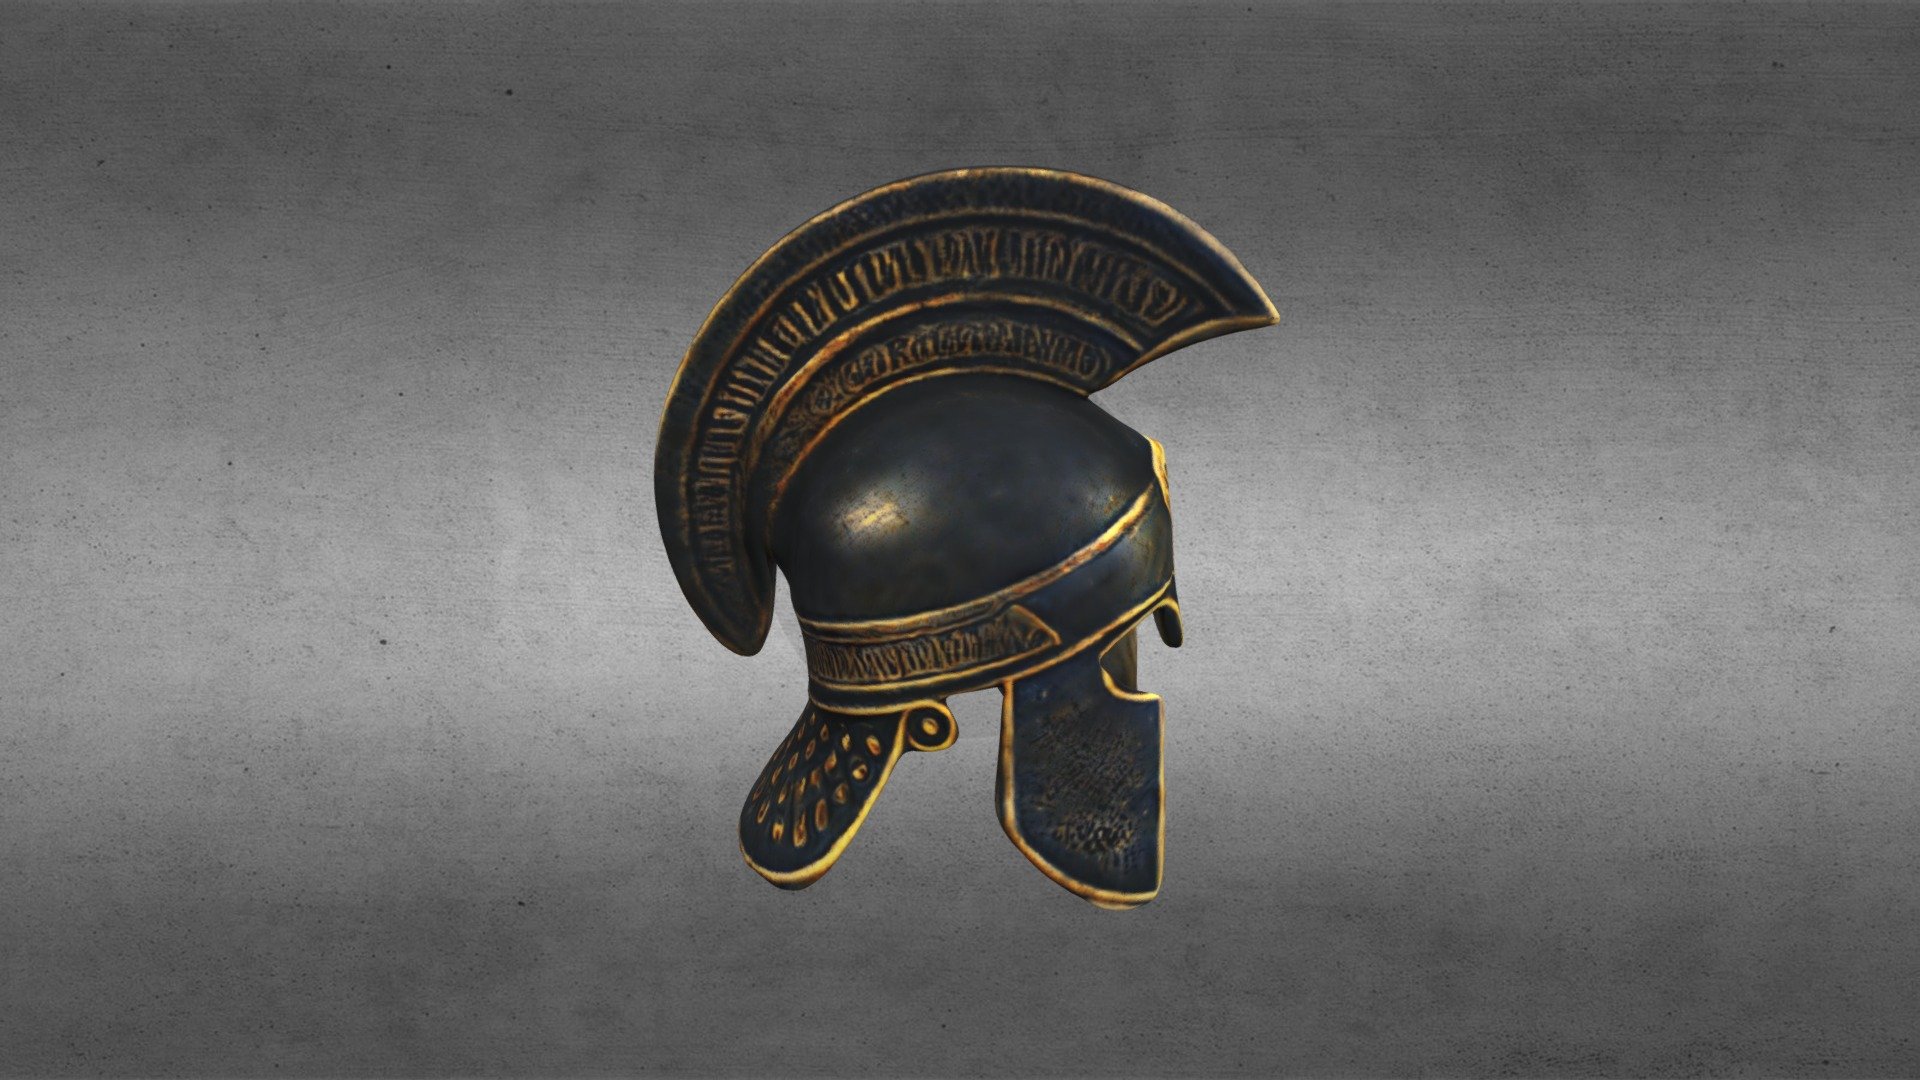 Ancient Greek helmet with a high crestand gilding .
Древнегреческий шлем с высоким гребнем и позолотой 3d model